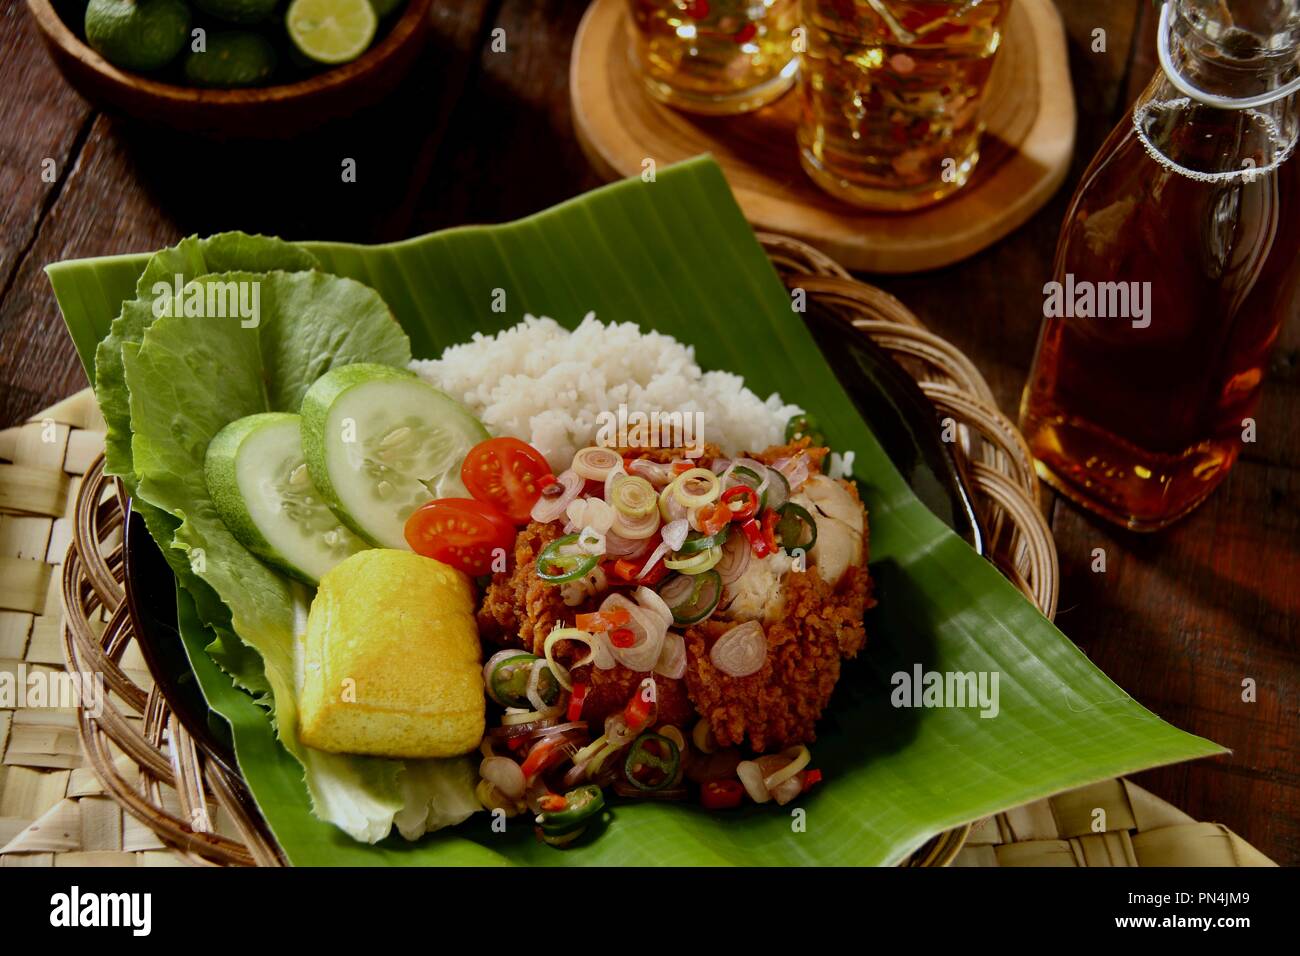 Ayam Geprek Sambal Matah. Fusion Street Food Gericht der Southern Fried Chicken gekrönt mit Sambal Matah, die Balinesische Chili - zitronengras Salsa. Stockfoto